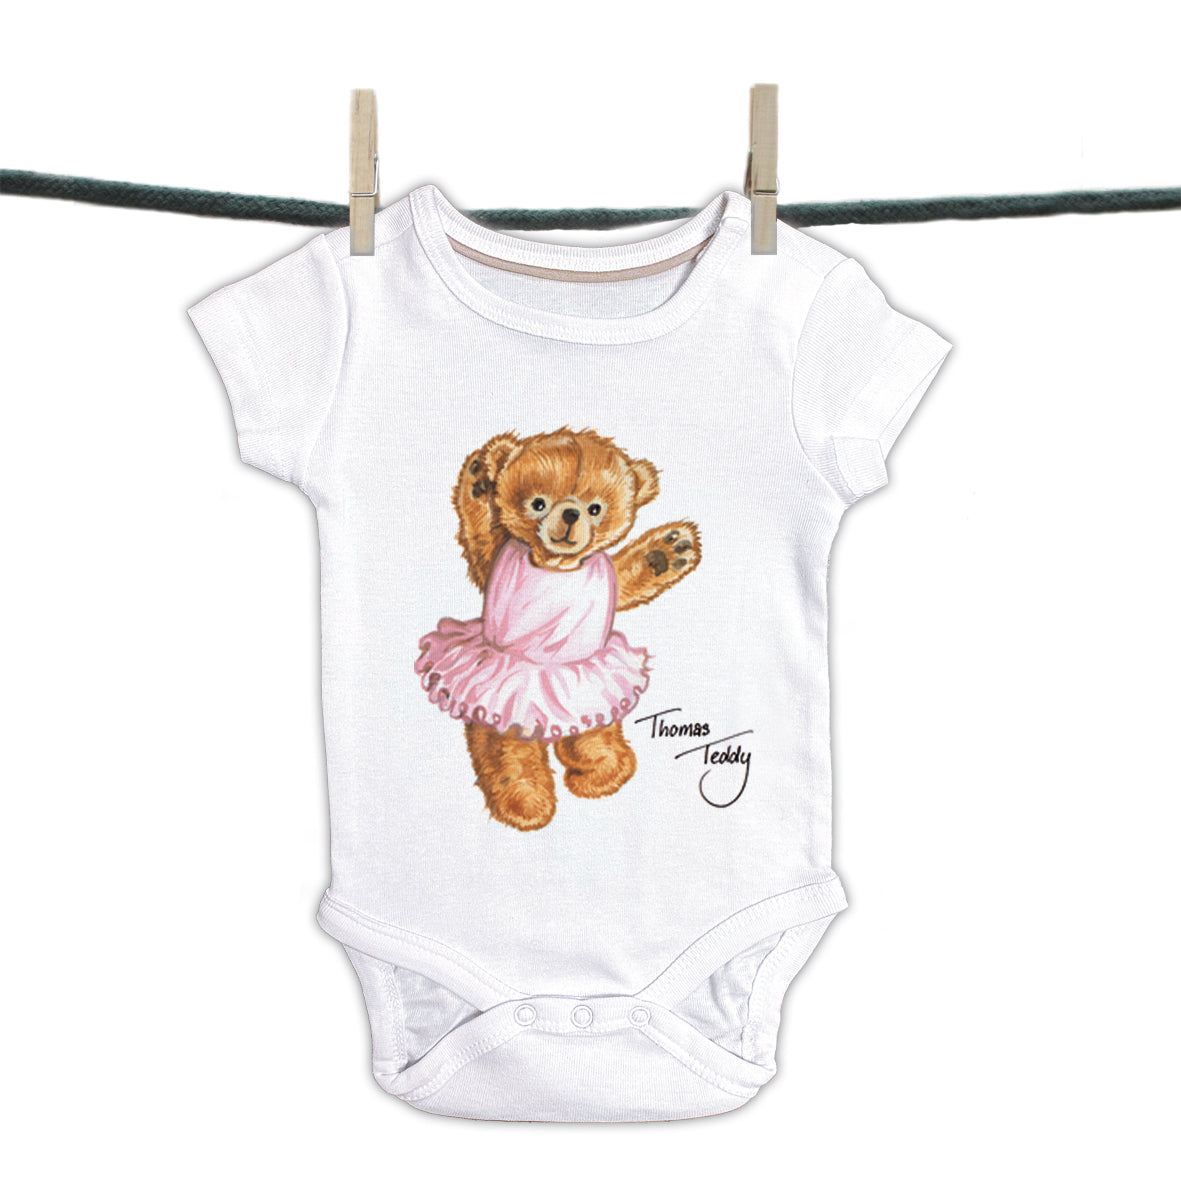 Baby romper Thomas Teddy collection - Ballerina Bear